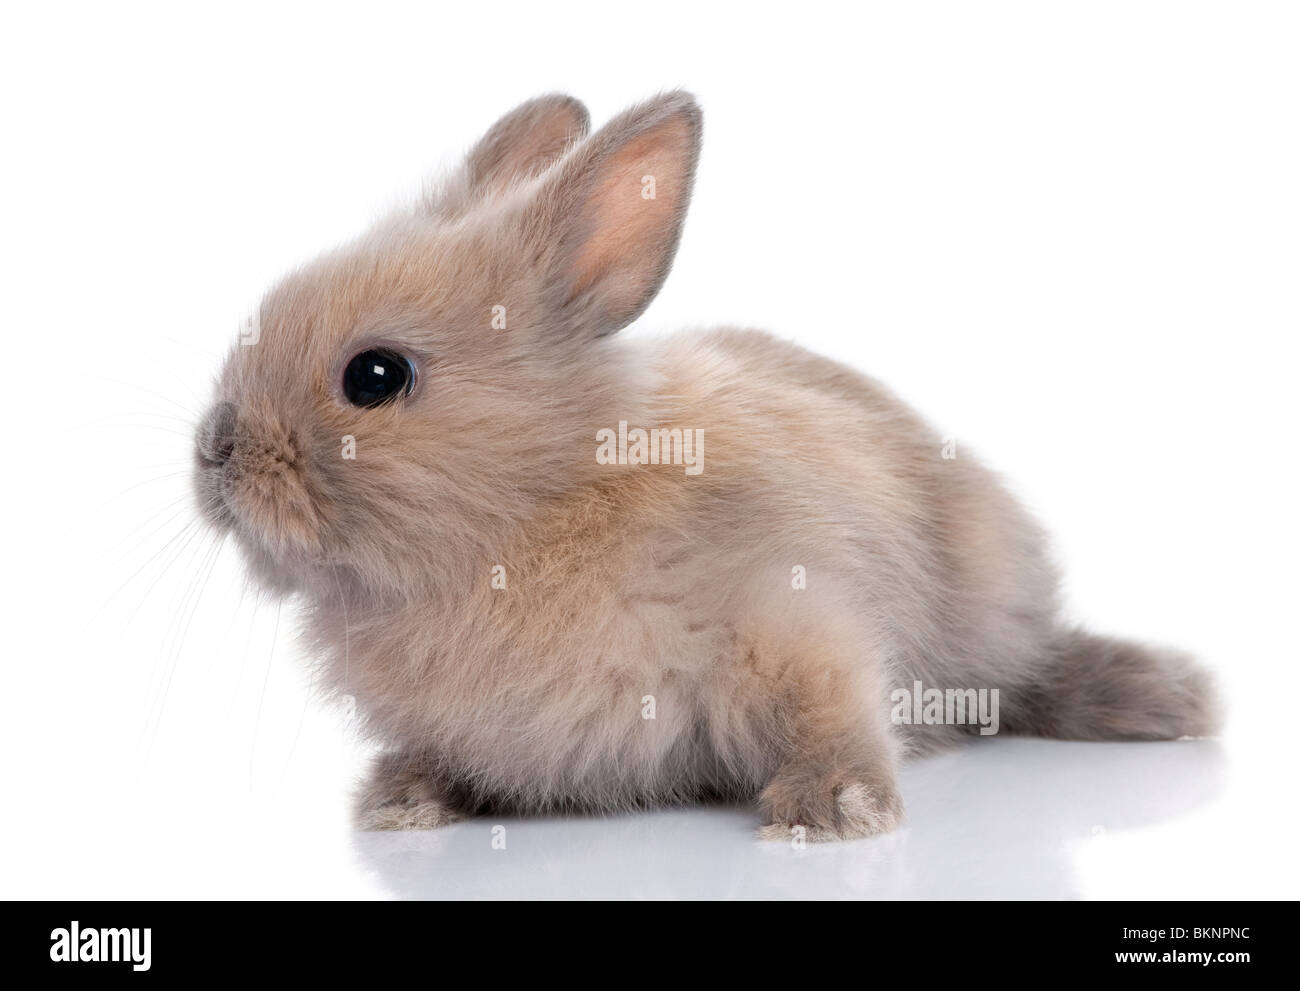 Bébé lapin brun, 5 semaines, devant un fond blanc Banque D'Images